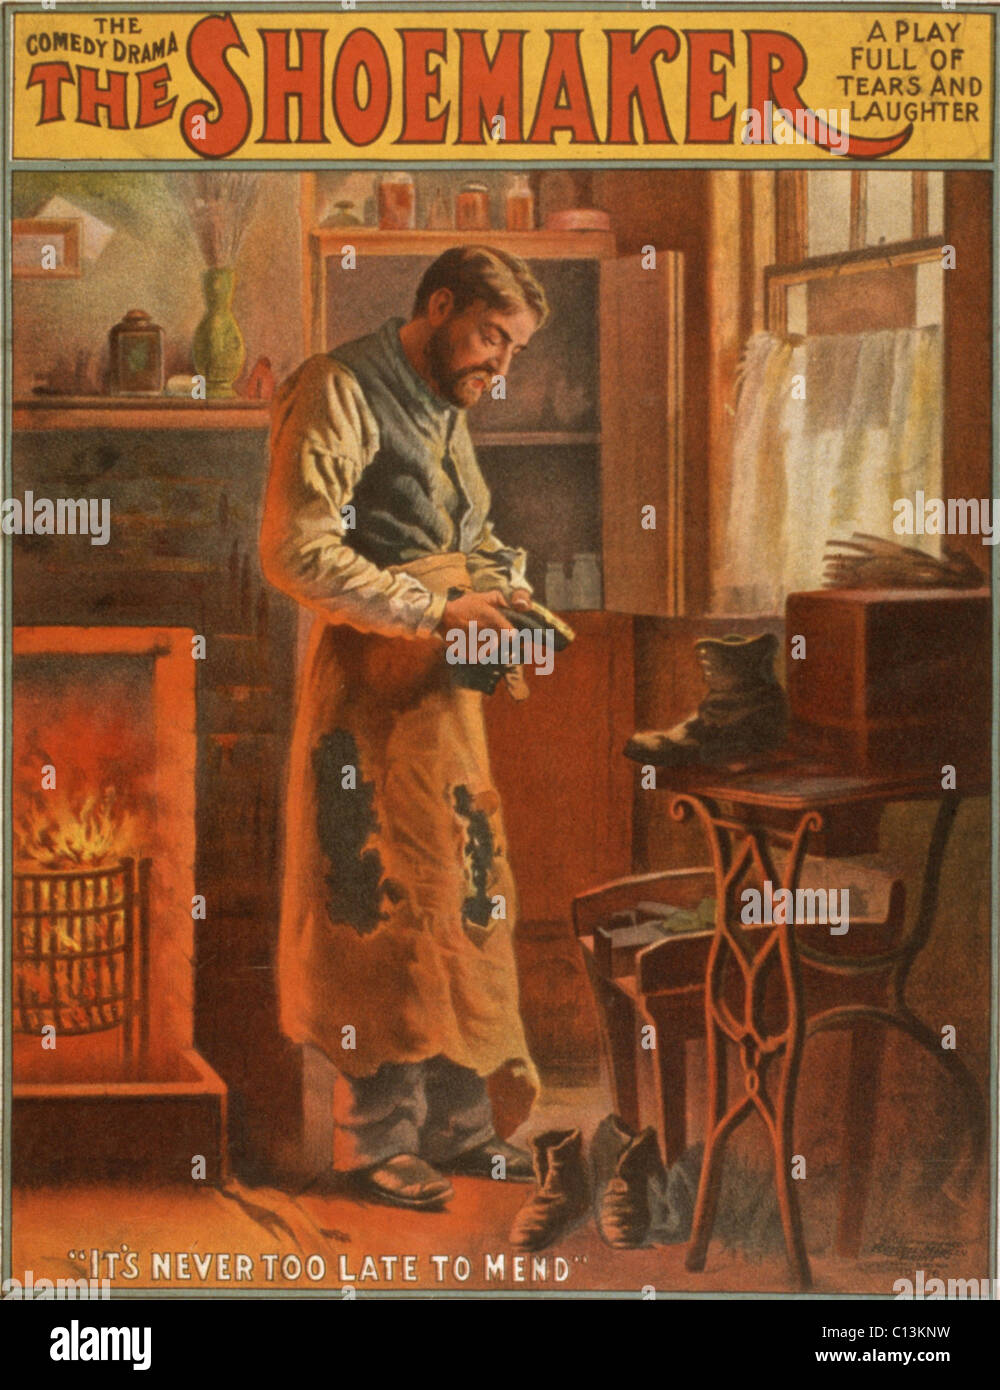 Theatralische Plakat für eine Komödie-Drama mit dem Titel THE SHOEMAKER. Ca. 1907. Stockfoto